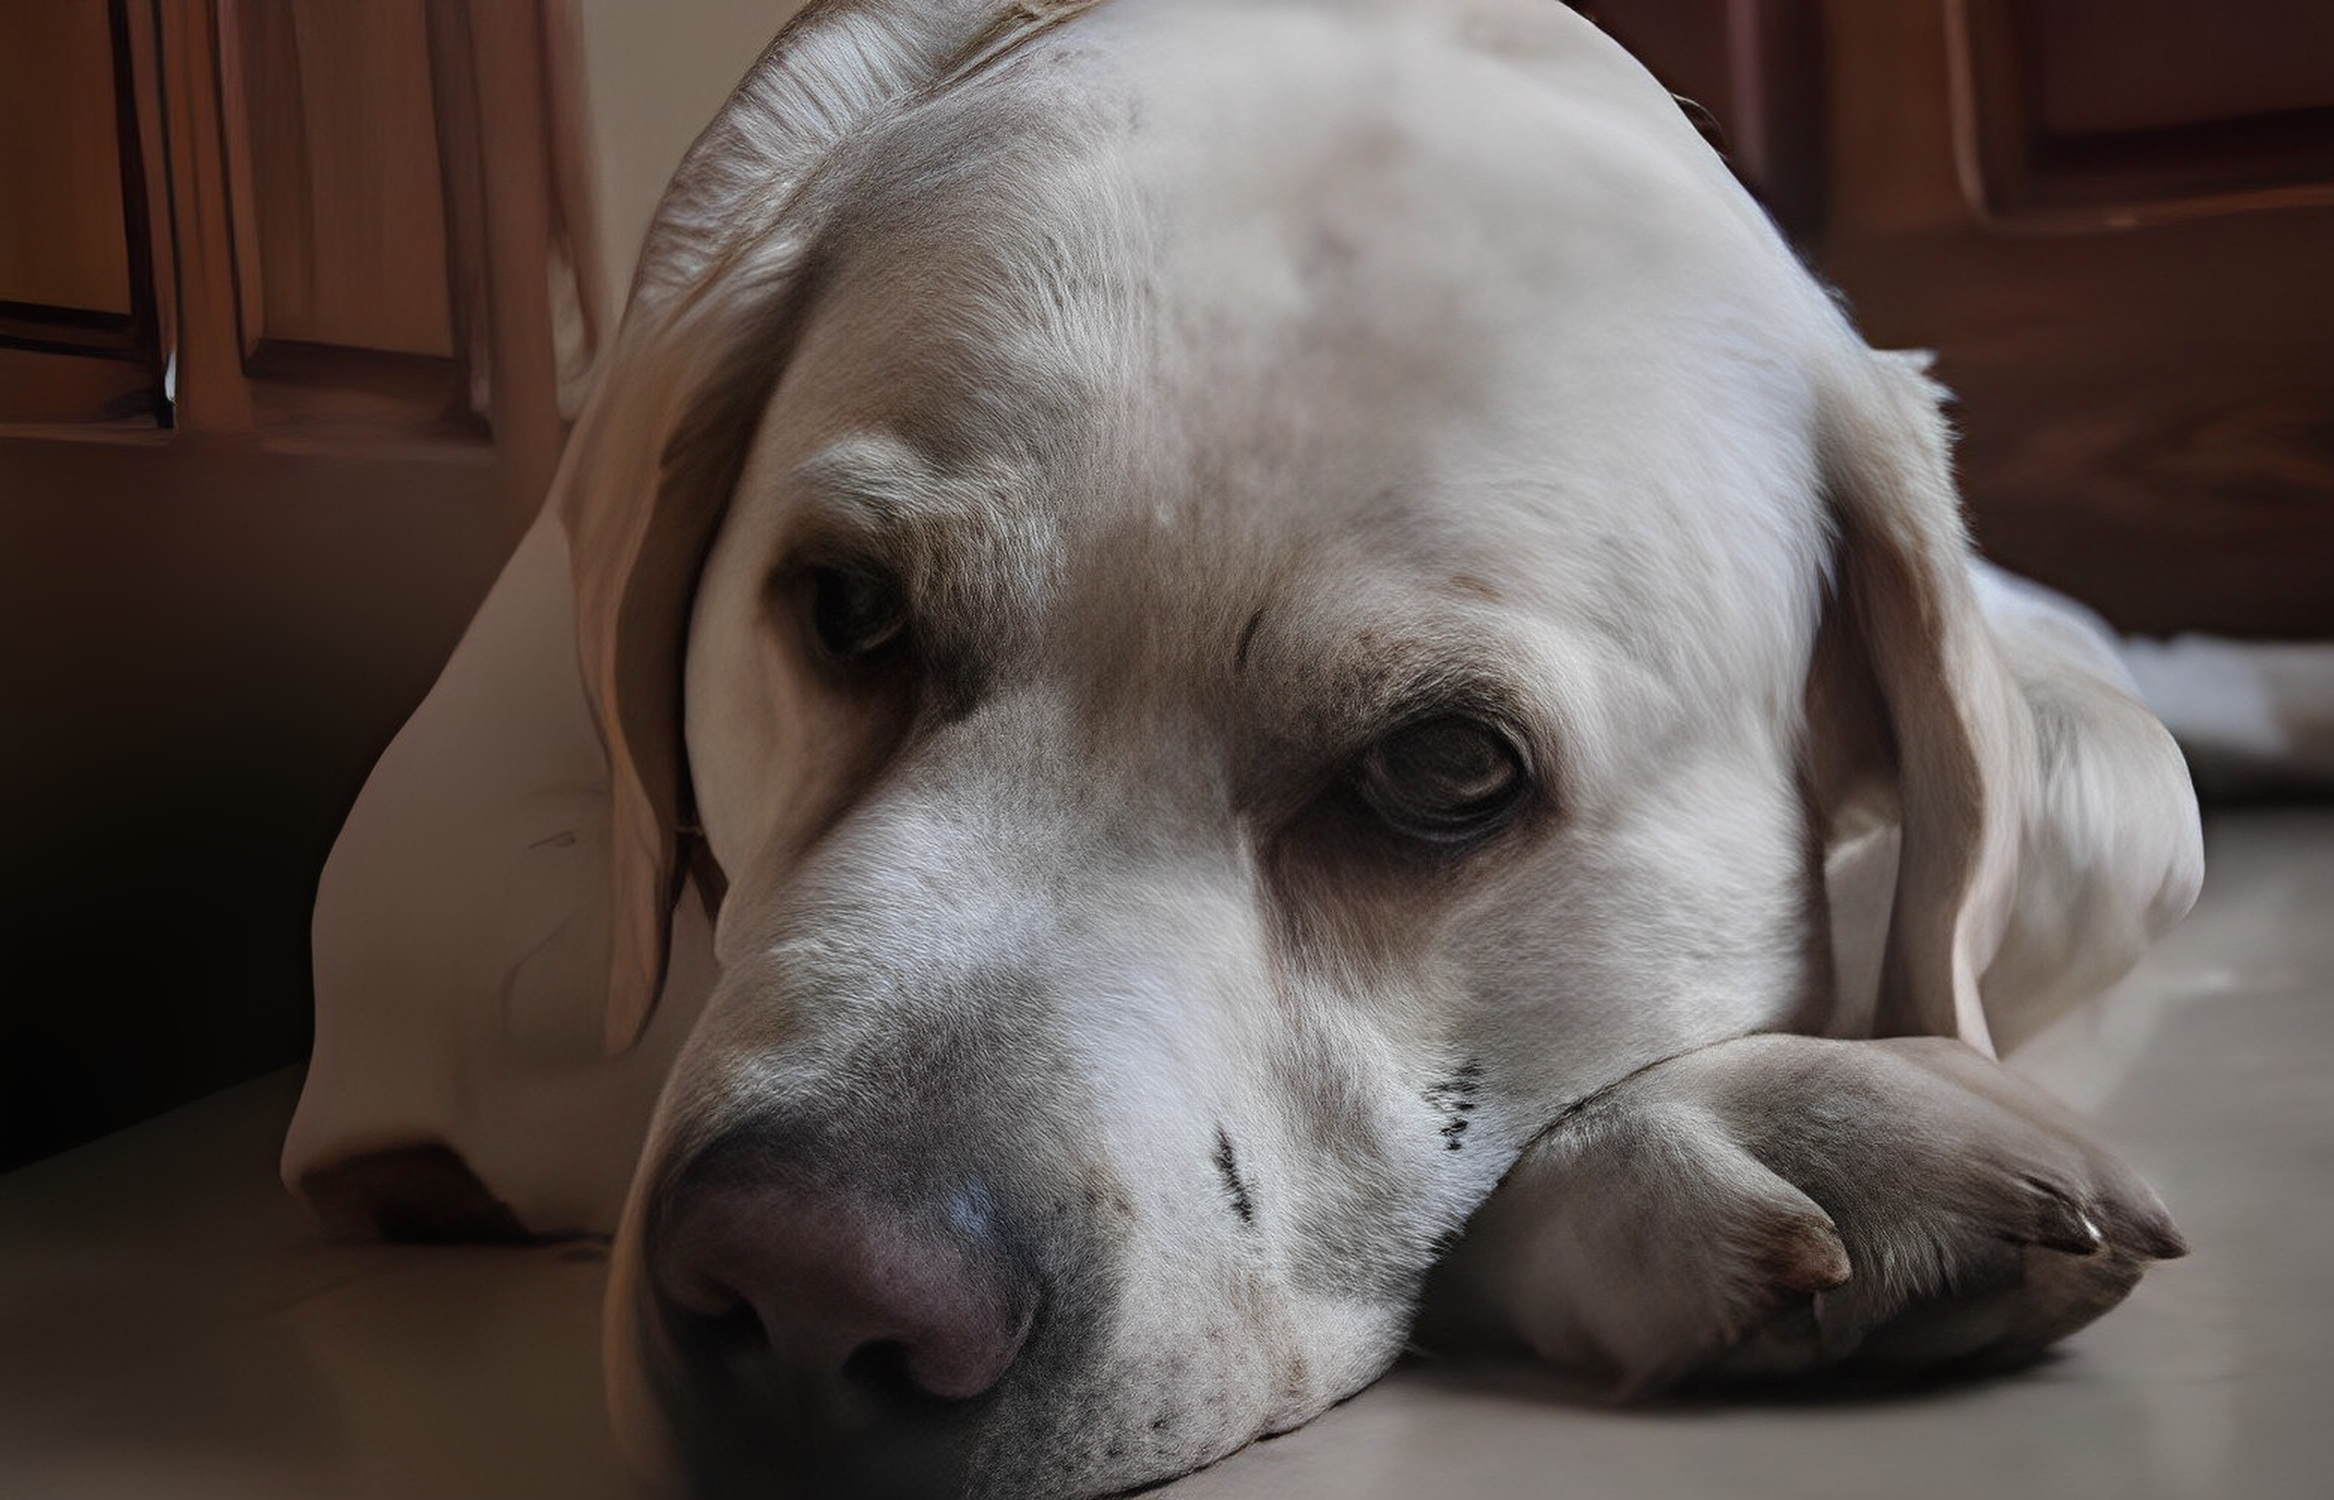 مرض السرطان عند الكلاب: الأنواع الأعراض التحذيرية وخيارات العلاج والوقاية